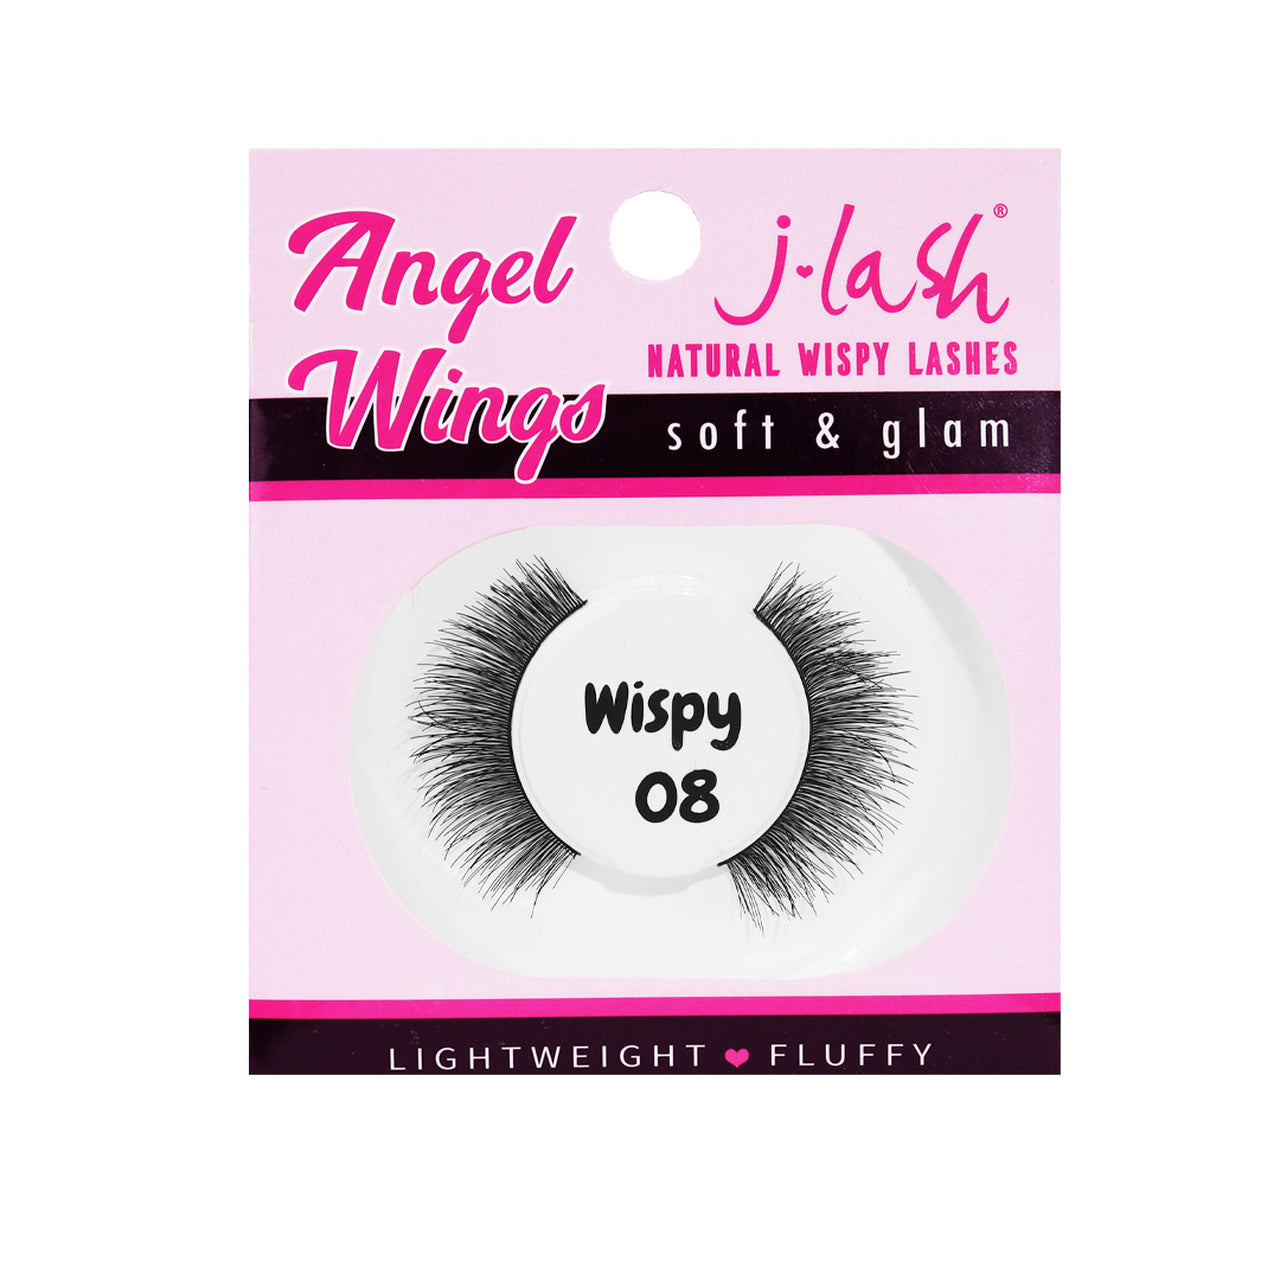 Angel Wings 08